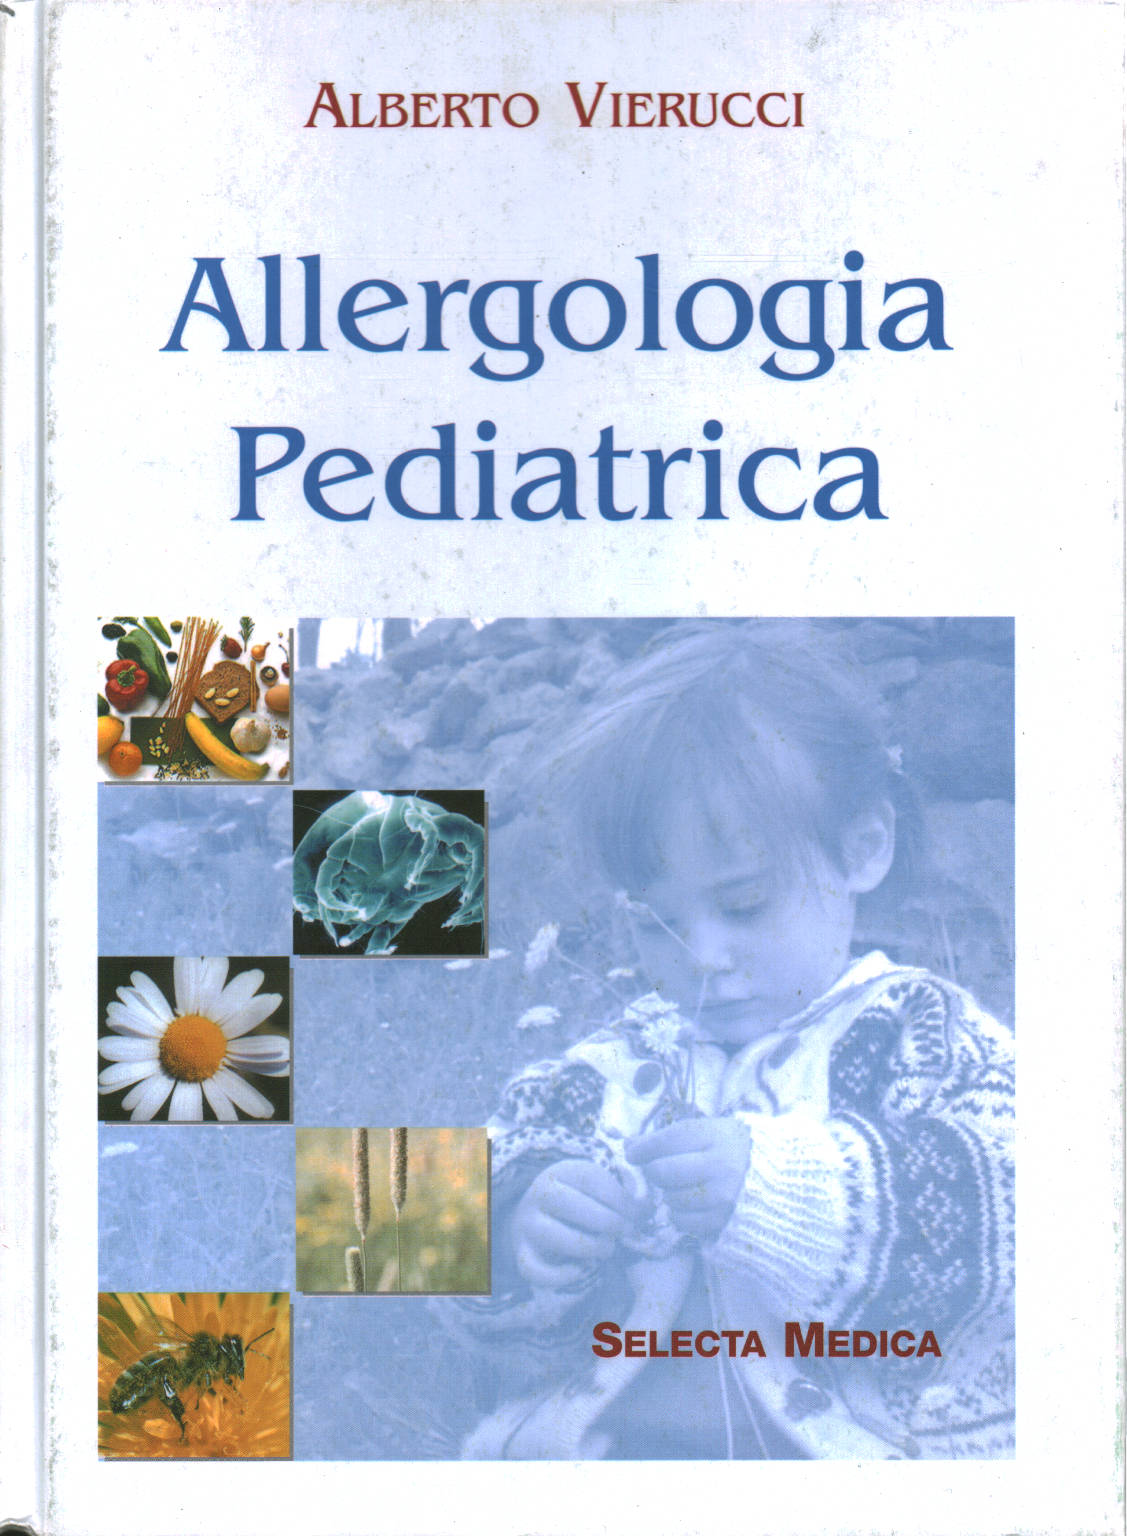 Allergologia Pediatrica, Alberto Vierucci